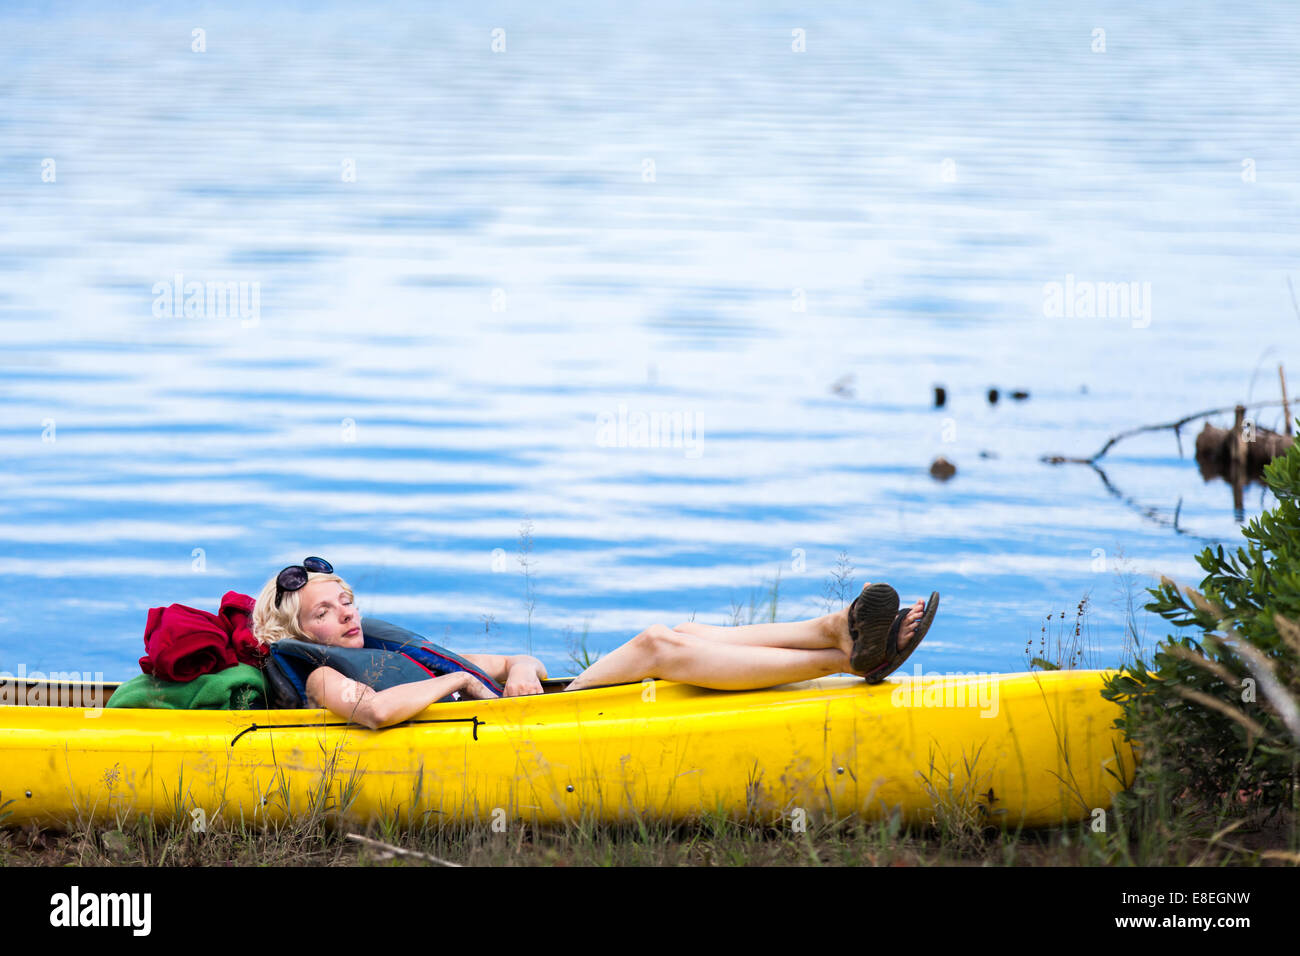 Stanco donna che dorme in un kayak giallo Foto Stock